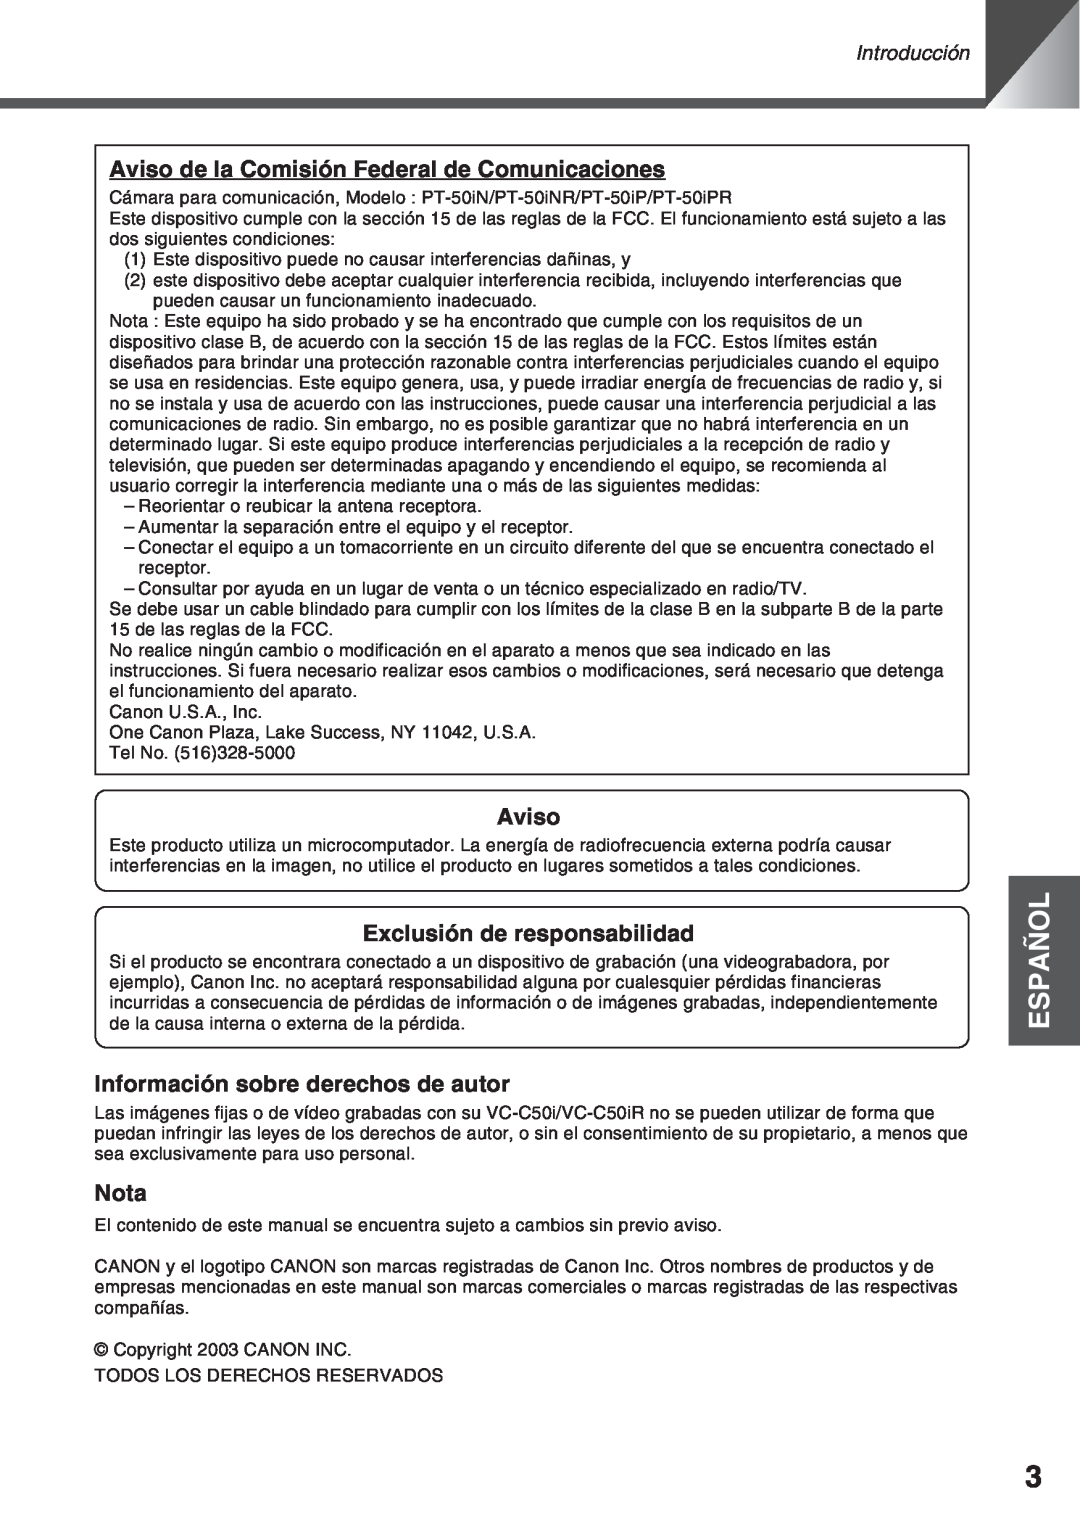 Canon VC-C50IR Español, Aviso de la Comisión Federal de Comunicaciones, Exclusión de responsabilidad, Nota, Introducción 